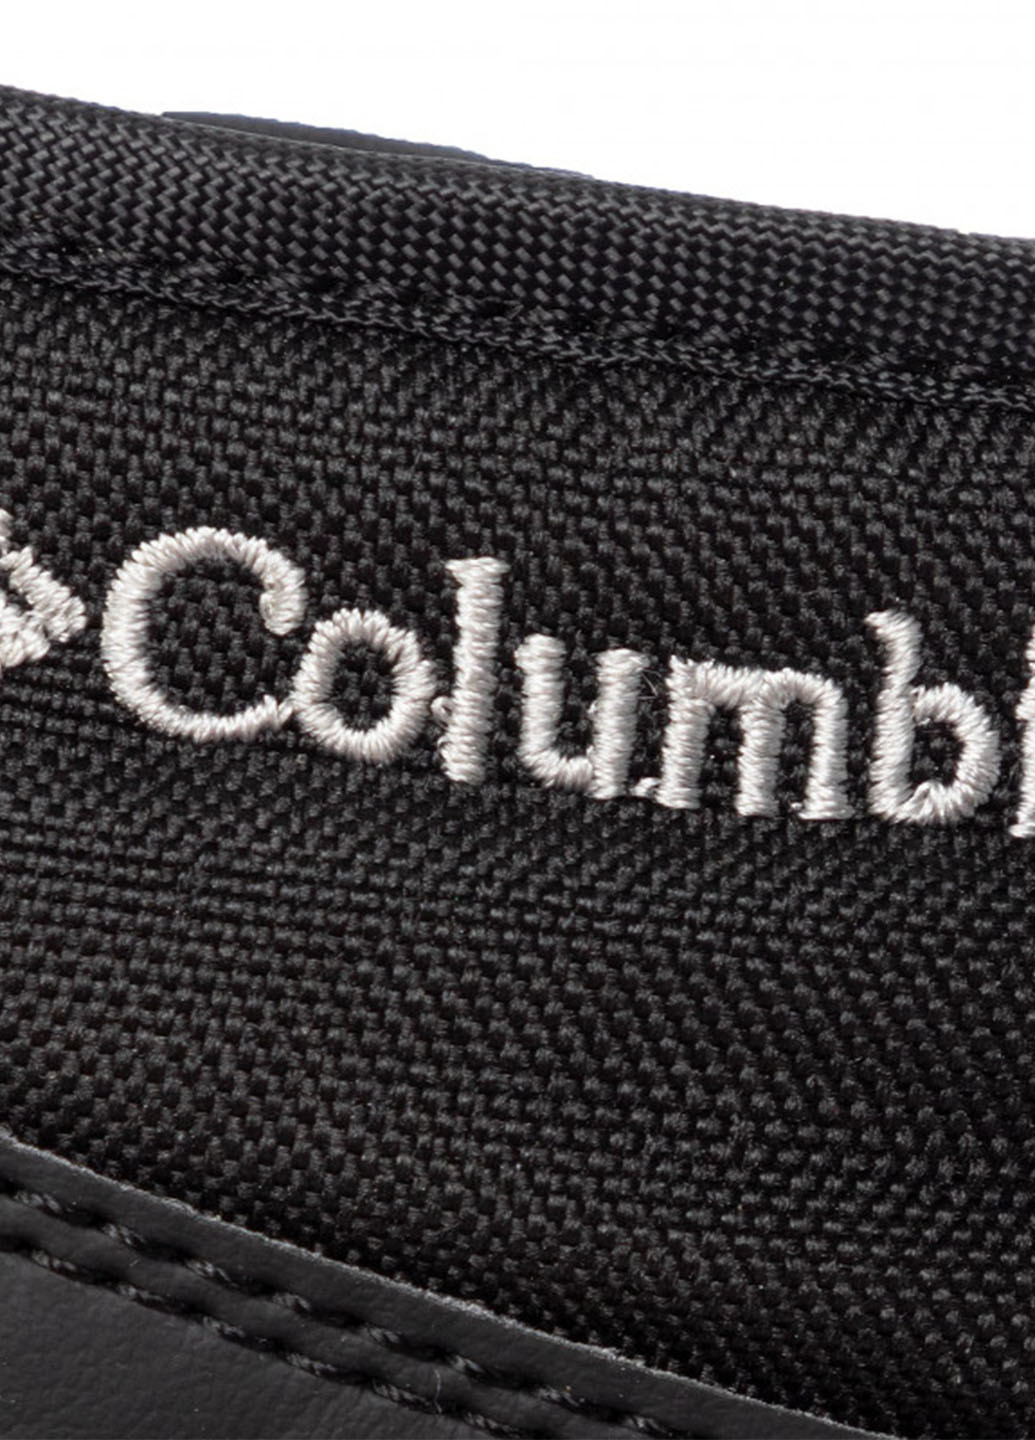 Зимние ботинки Columbia без декора тканевые, из искусственной кожи